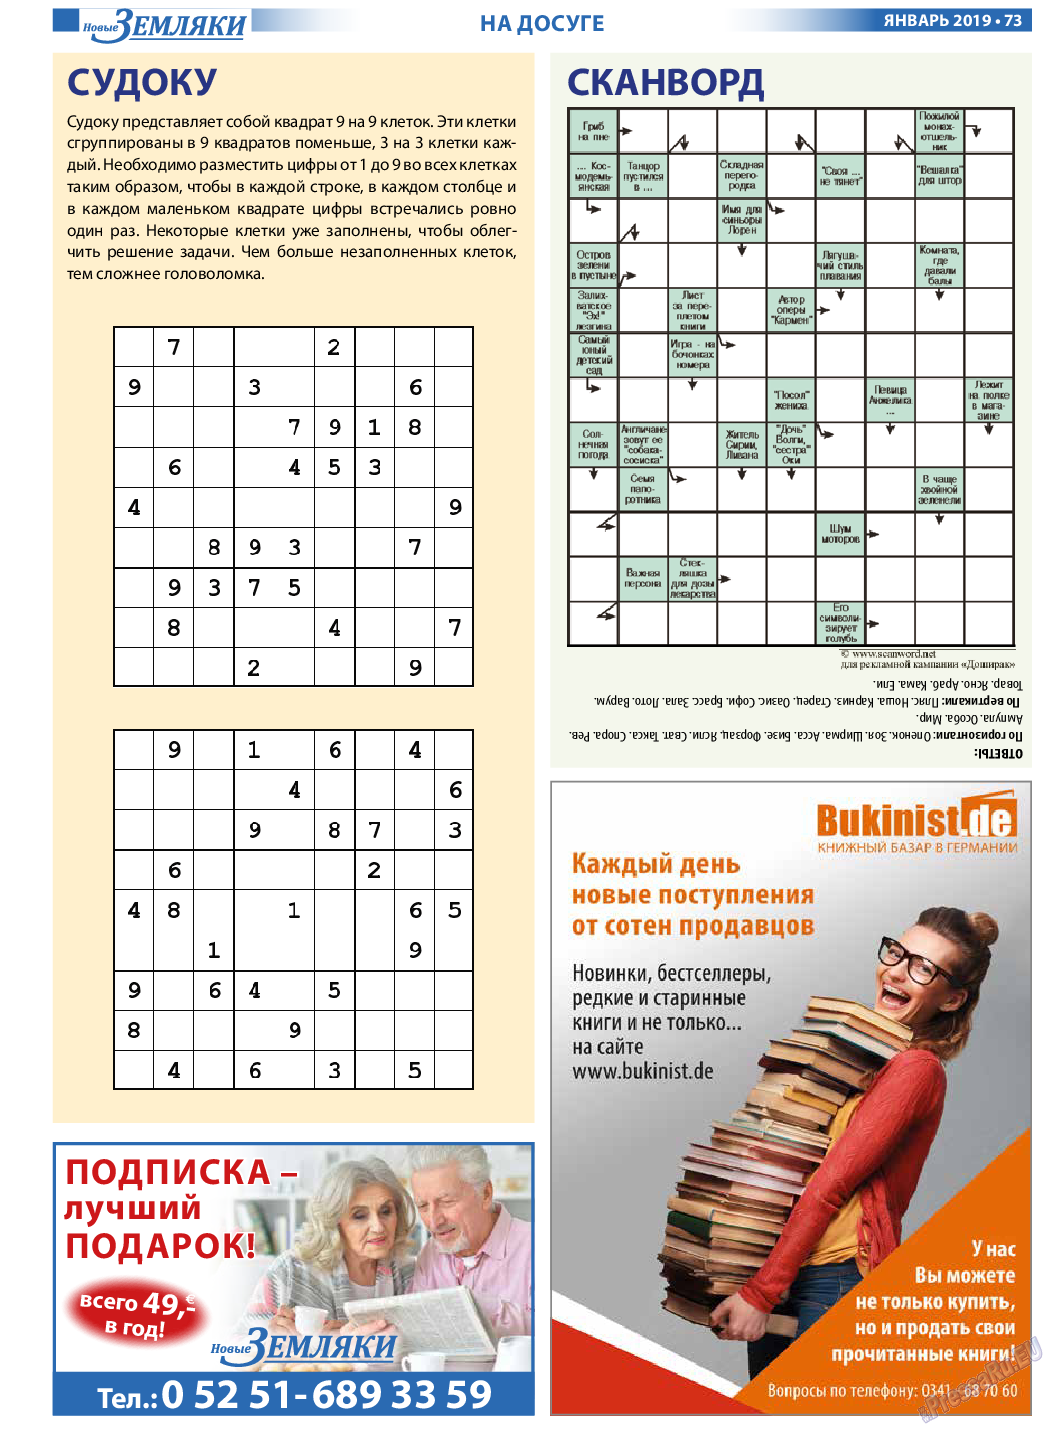 Новые Земляки, газета. 2019 №1 стр.73